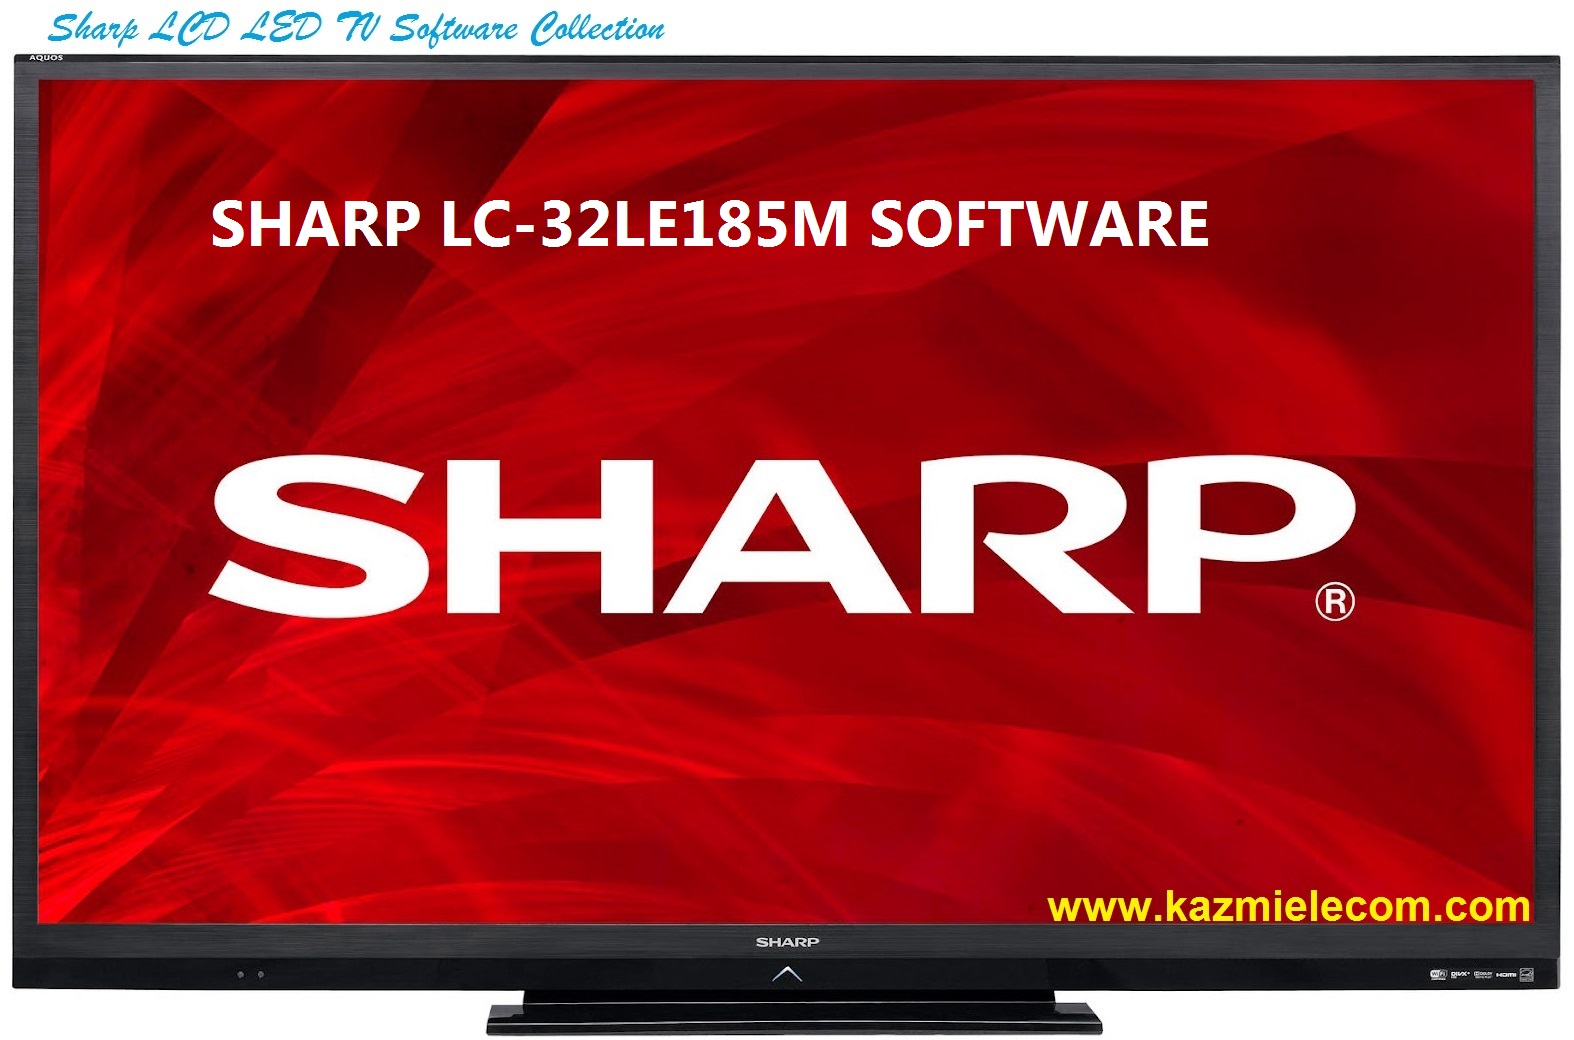 Sharp Lc-32Le185M